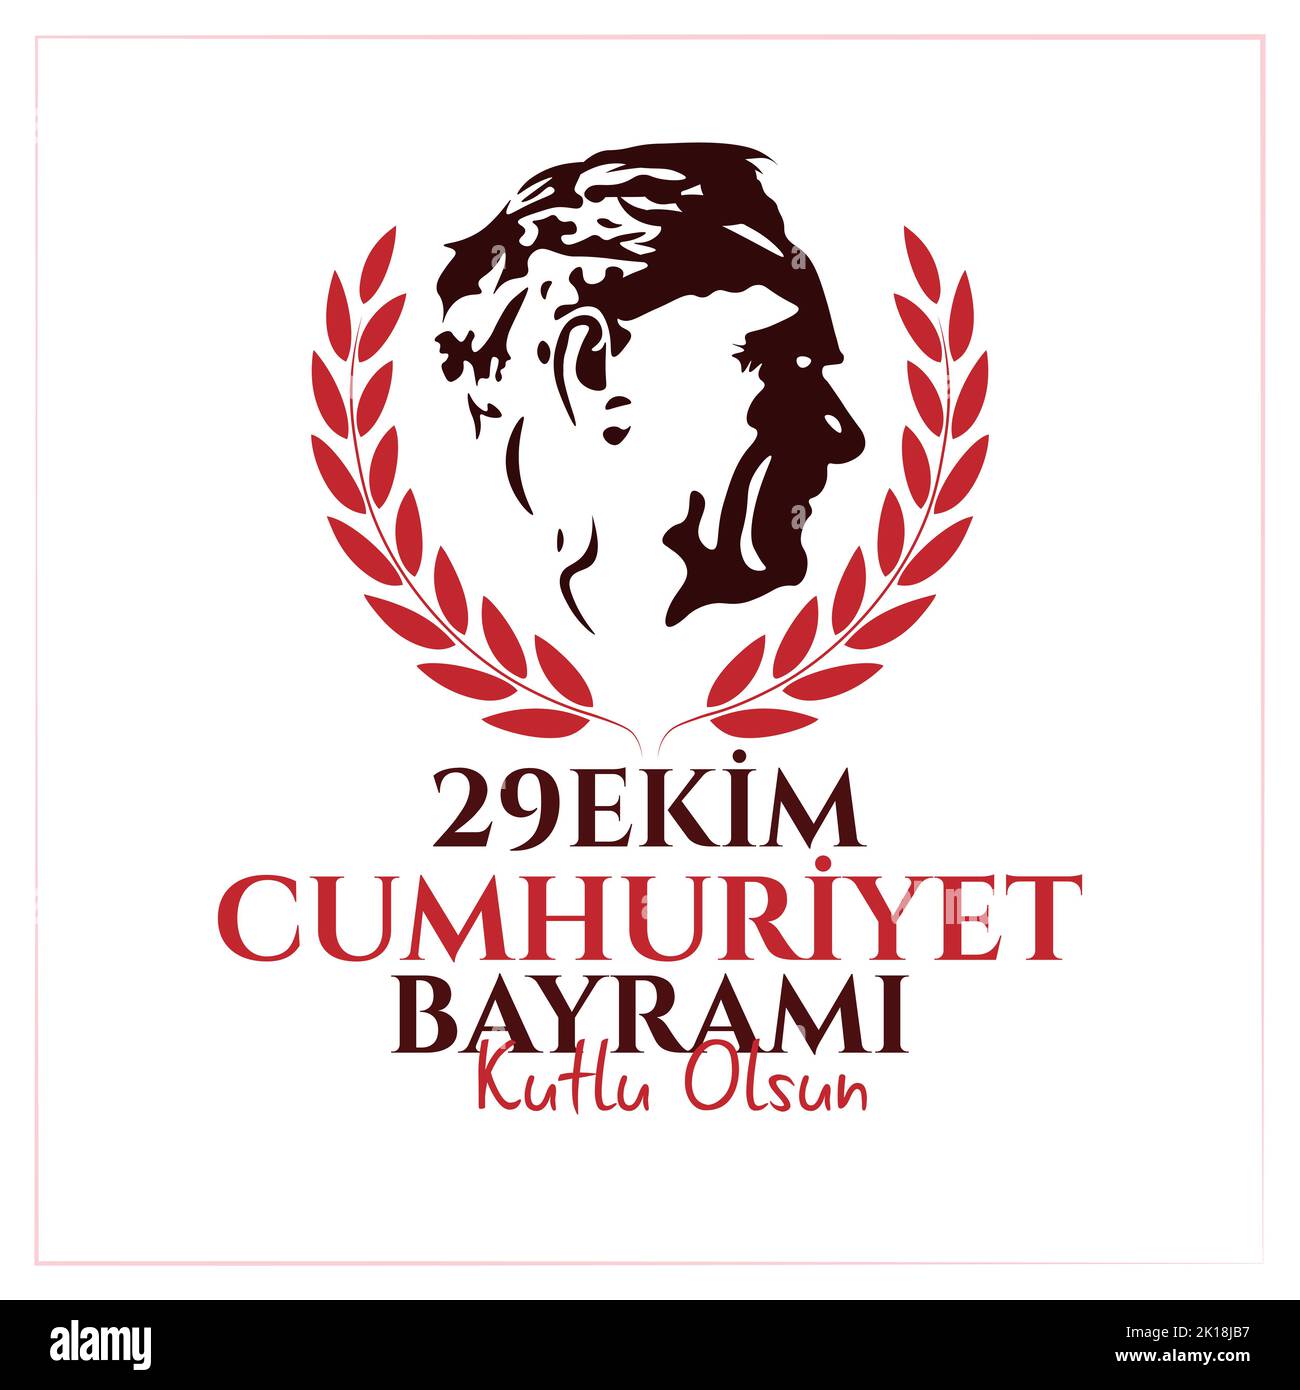 29 October Turkey Republic Day, happy holiday. Vector illustration. Turkish; 29 Ekim cumhuriyet bayrami kutlu olsun Stock Vector